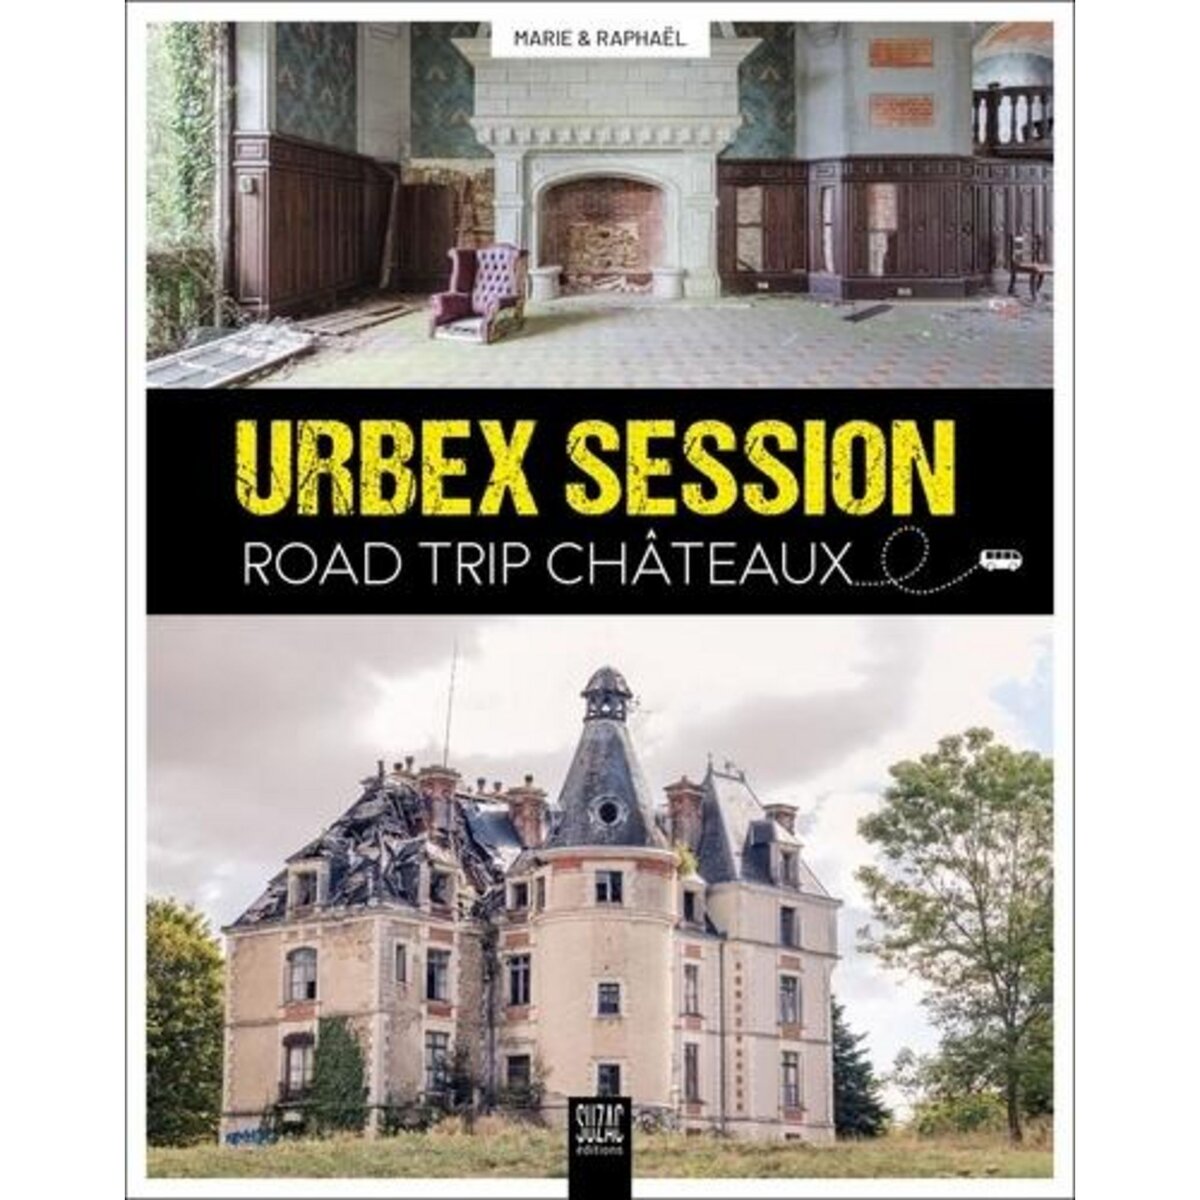  URBEX SESSION. ROAD TRIP CHATEAUX, Lopez Raphaël